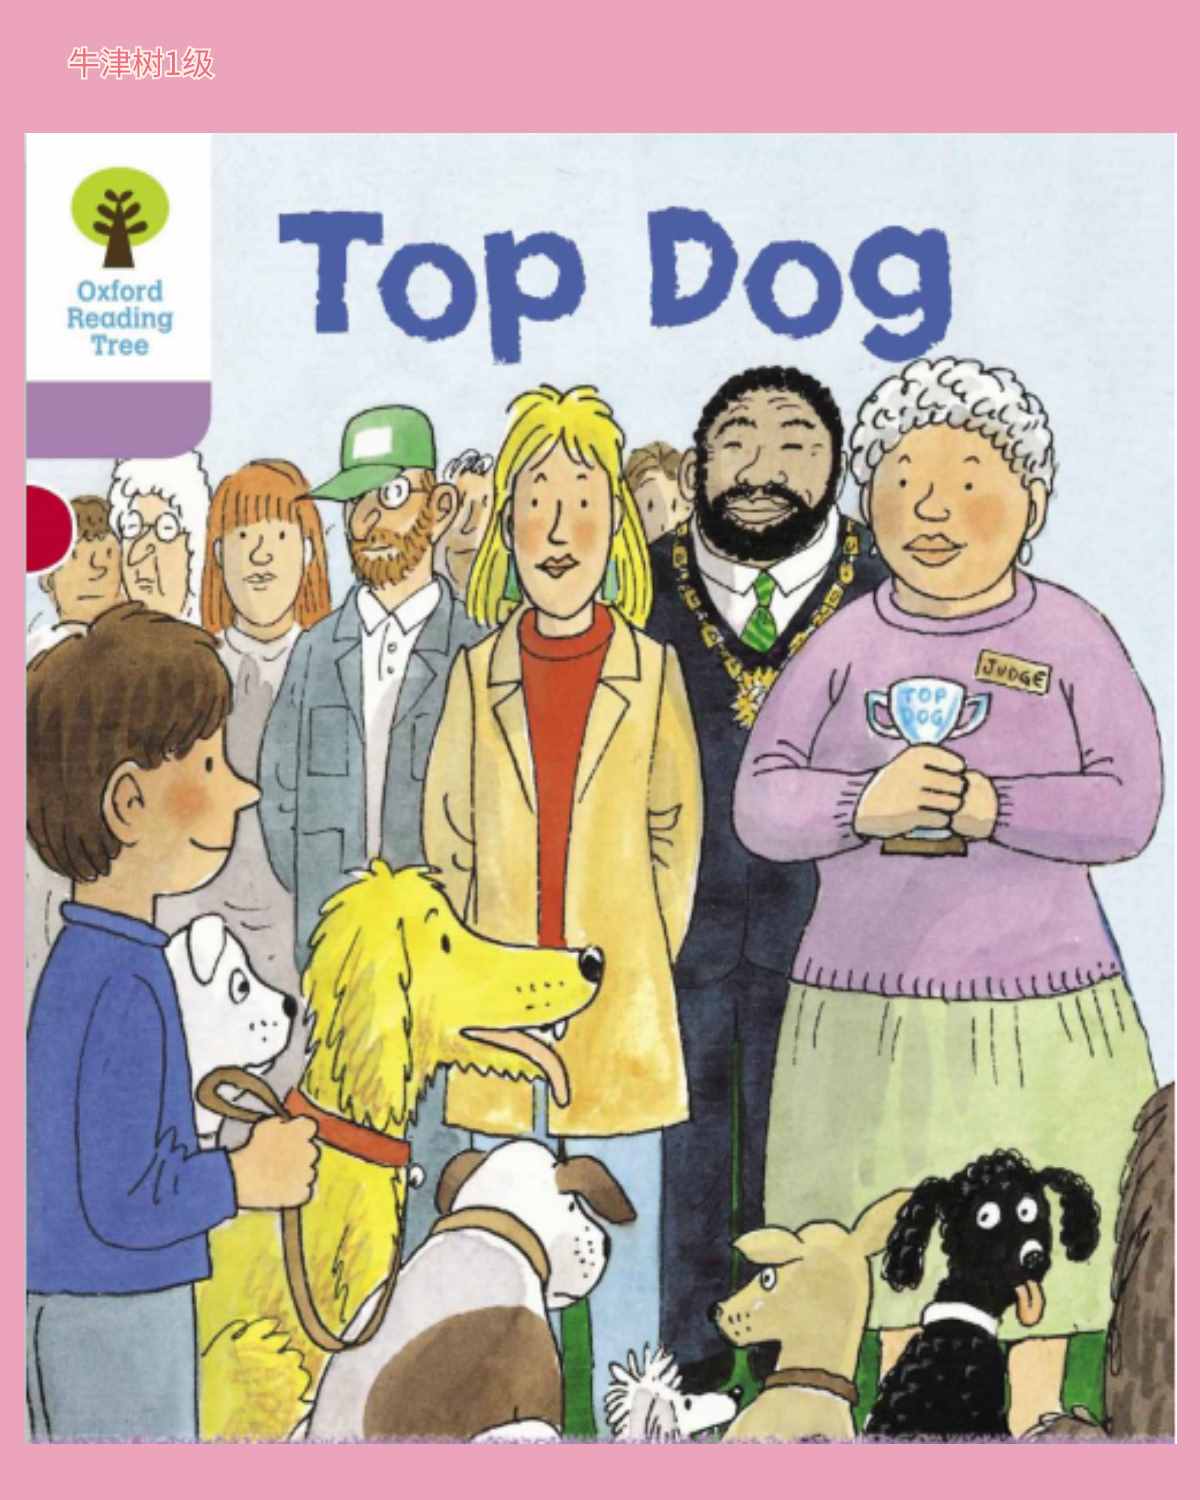 牛津树绘本21 Top dog“第一名”的三种表达方式